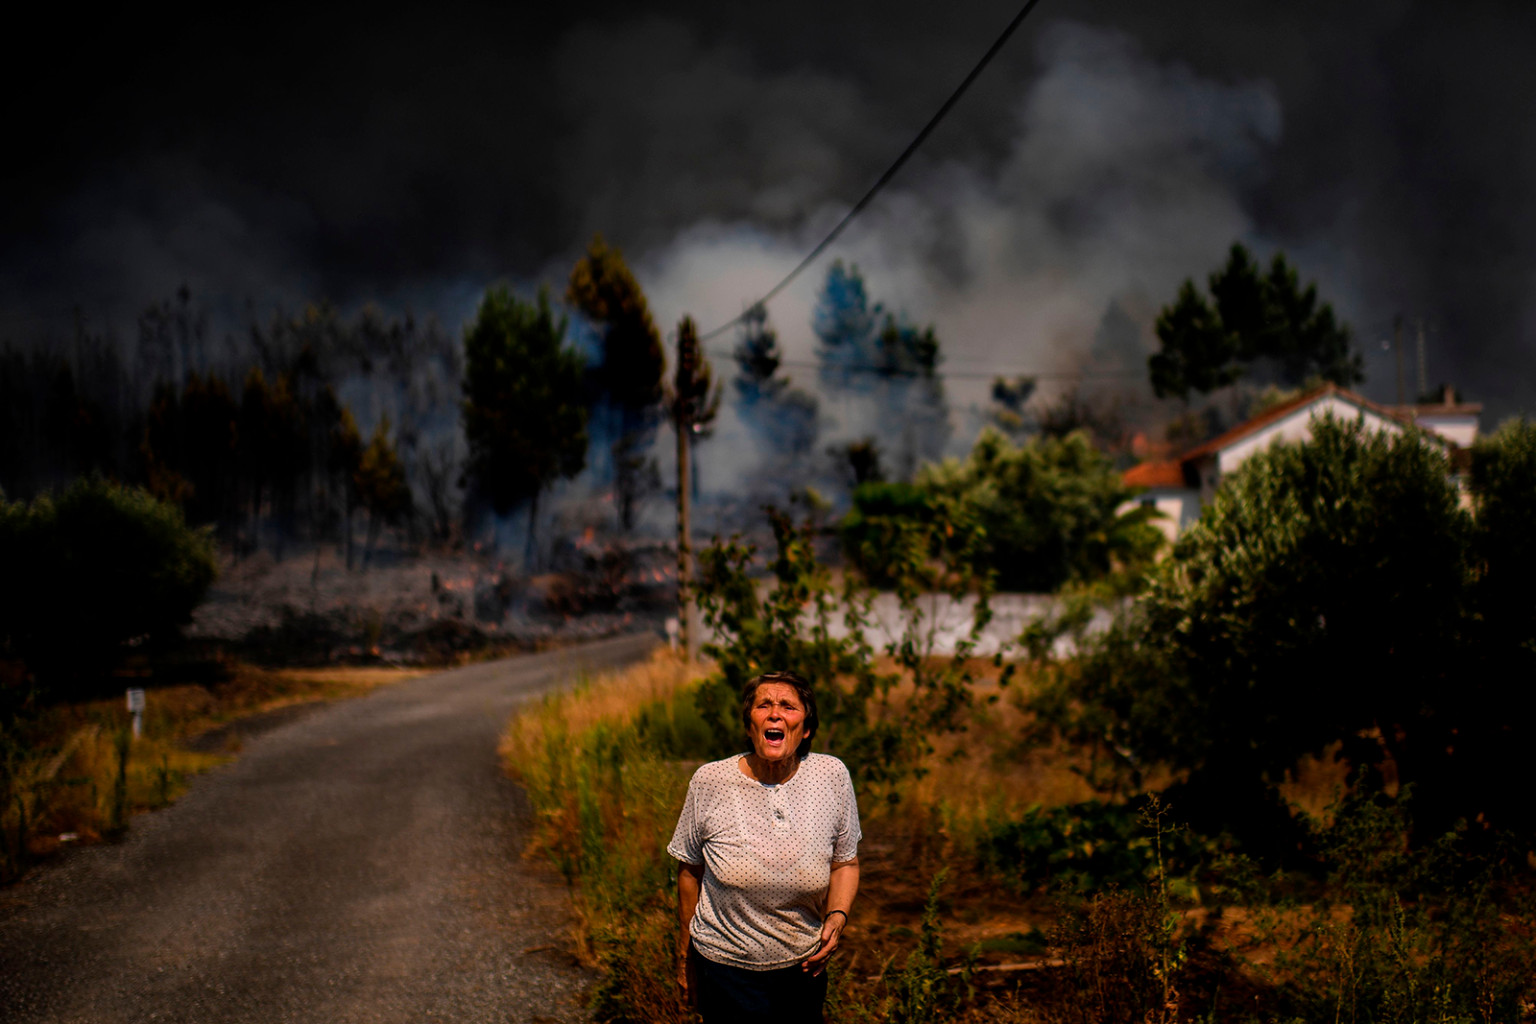   Một dân làng hét lên để được giúp đỡ khi một đám cháy rừng tiếp cận một ngôi nhà tại làng Casas da Ribeira ở Mação, miền trung Bồ Đào Nha, vào ngày 21 tháng 7.   